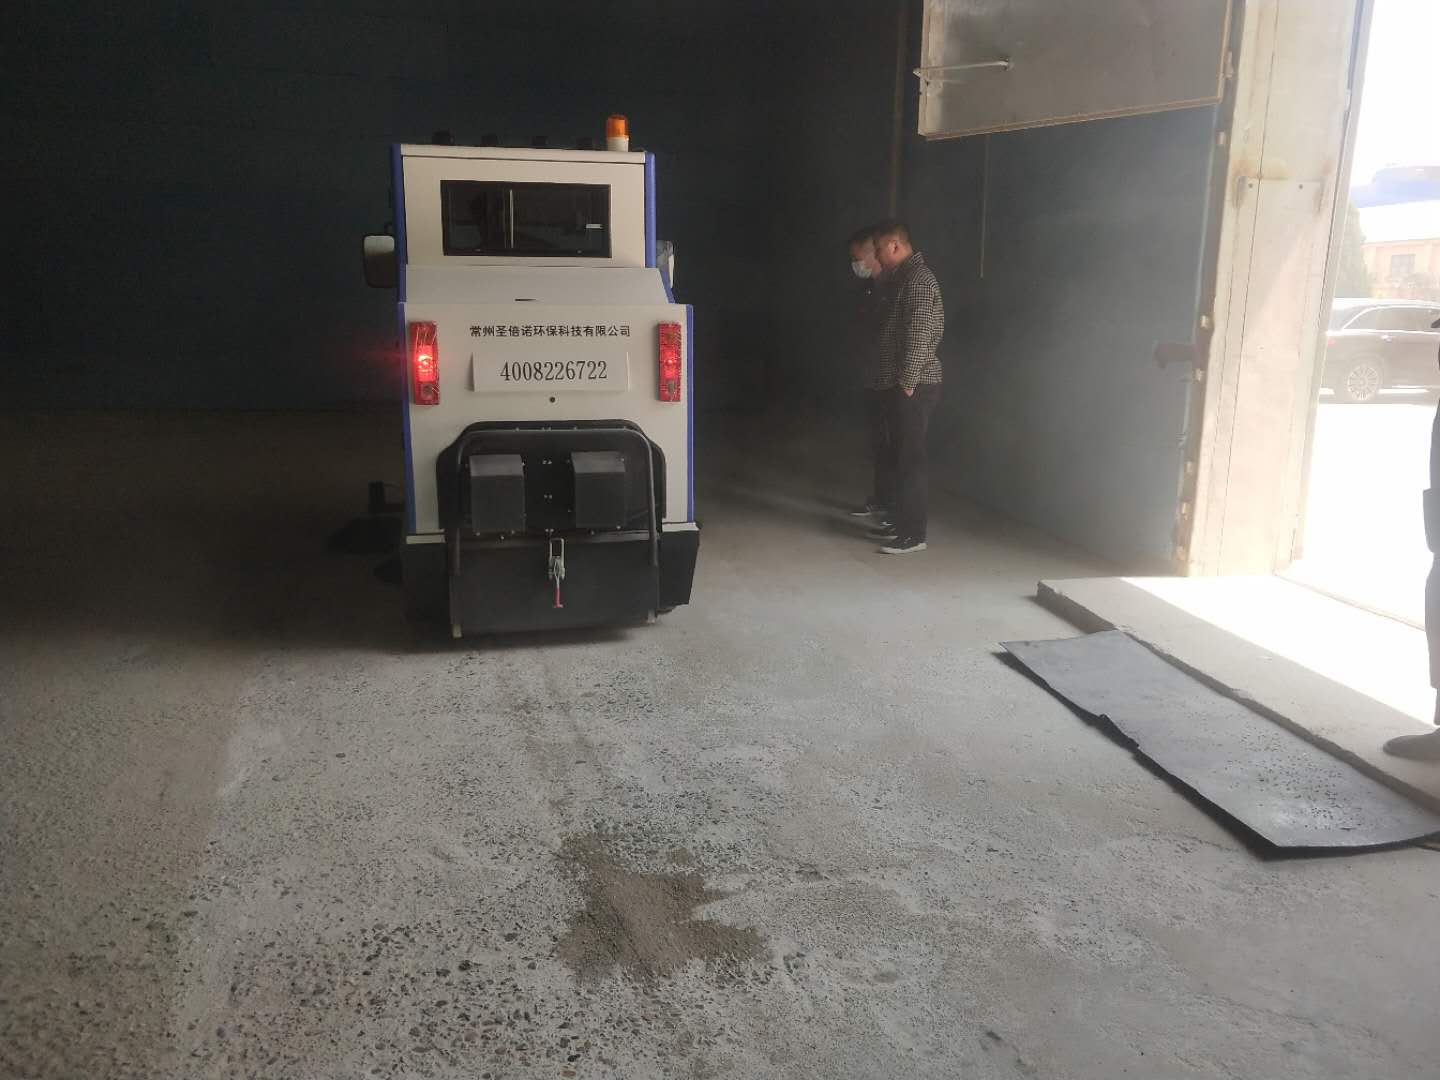 兴化某米业采购圣倍诺2000A驾驶式电动扫地车